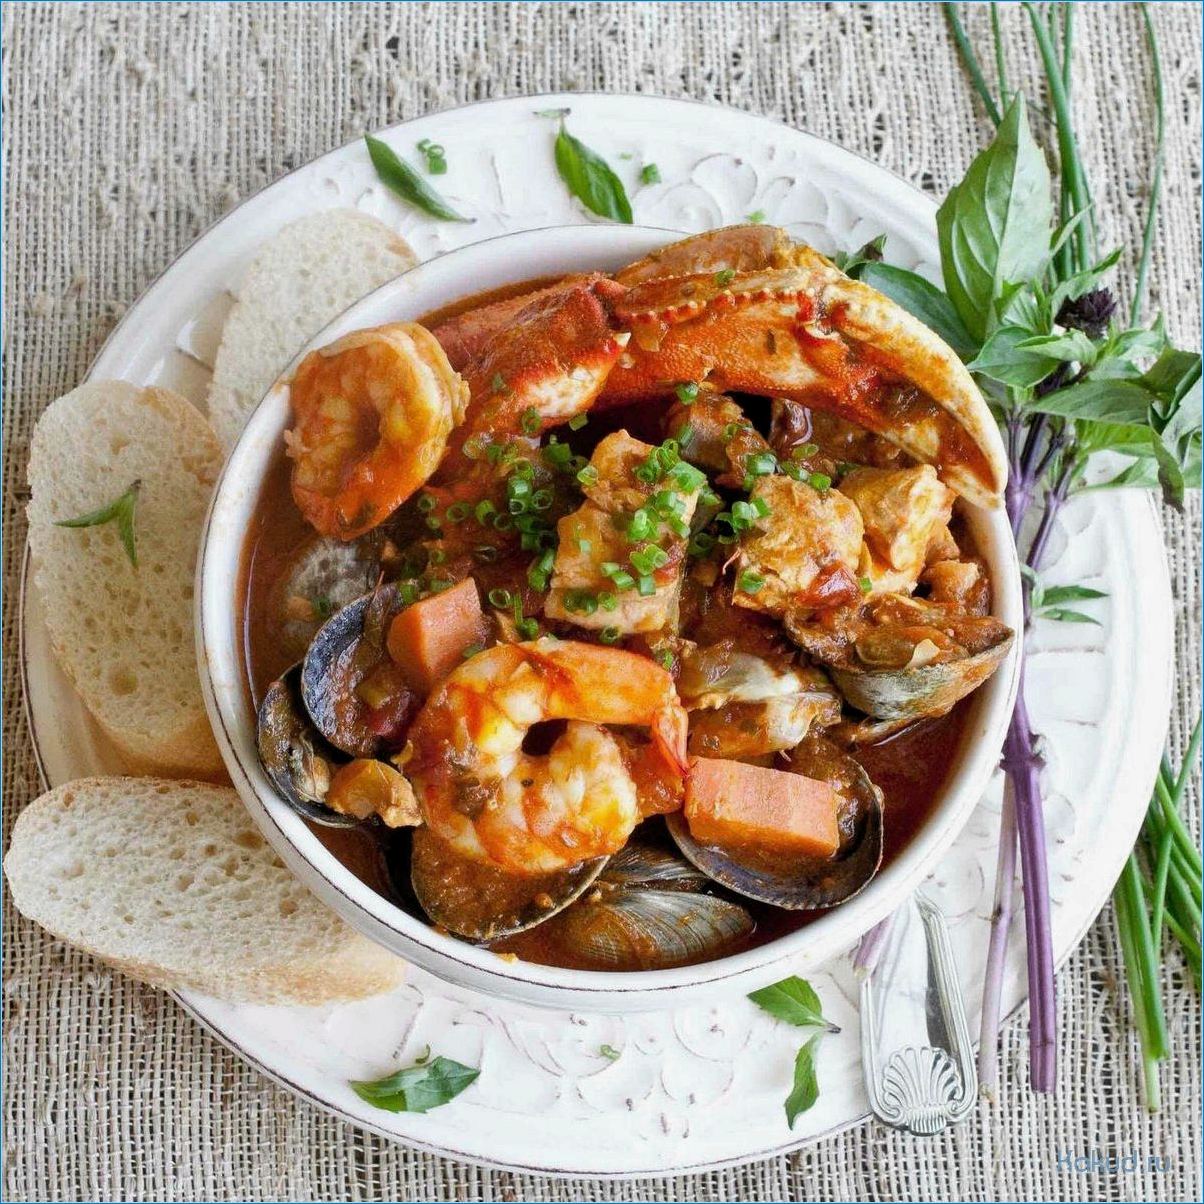 Рыбный суп буябес: рецепт приготовления и секреты